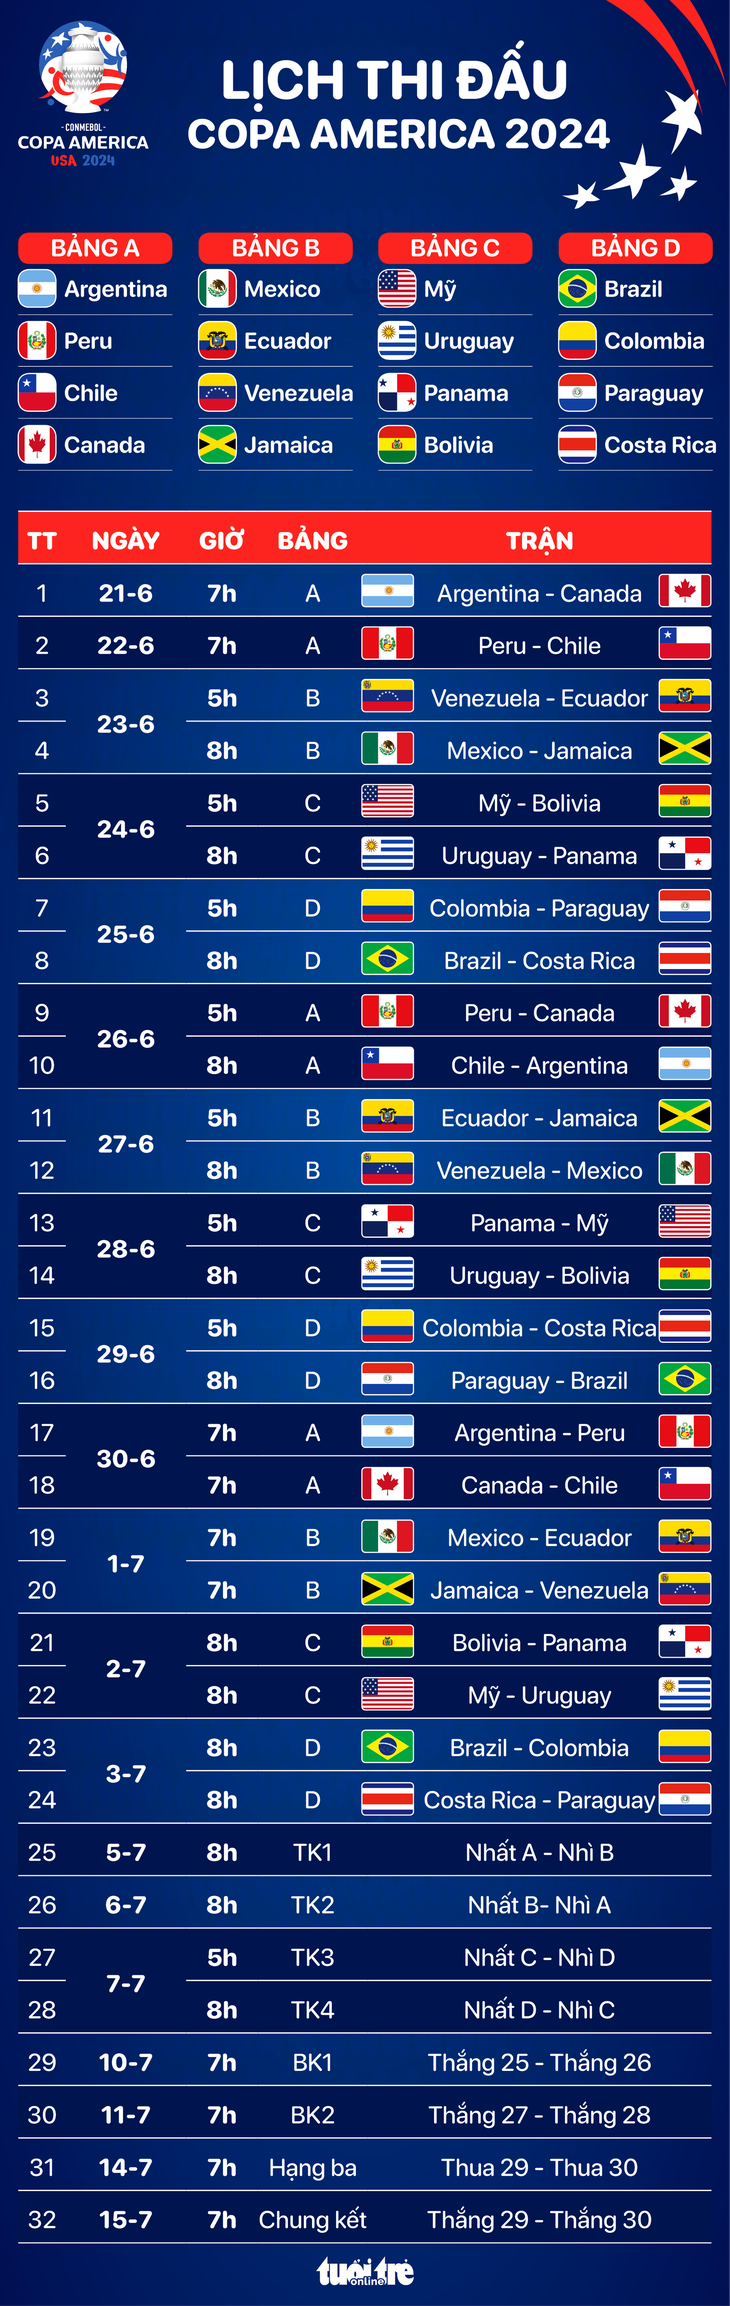 Lịch trực tiếp toàn bộ 32 trận đấu của Copa America 2024 - Đồ họa: AN BÌNH